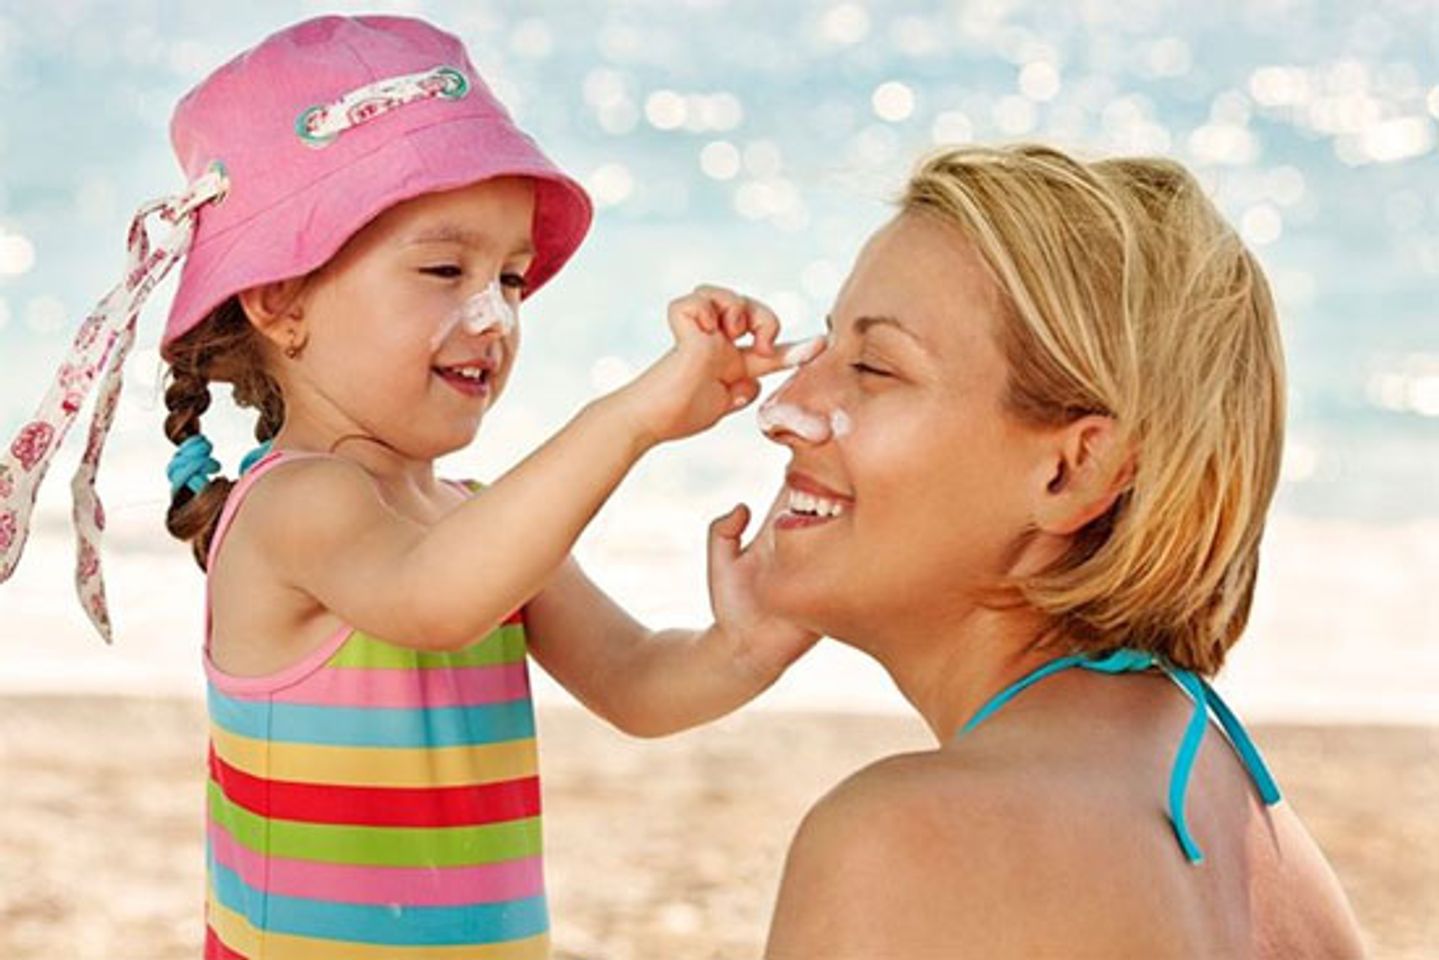 Kem chống nắng cho trẻ em giúp bảo vệ làn da mỏng manh, non nớt của bé